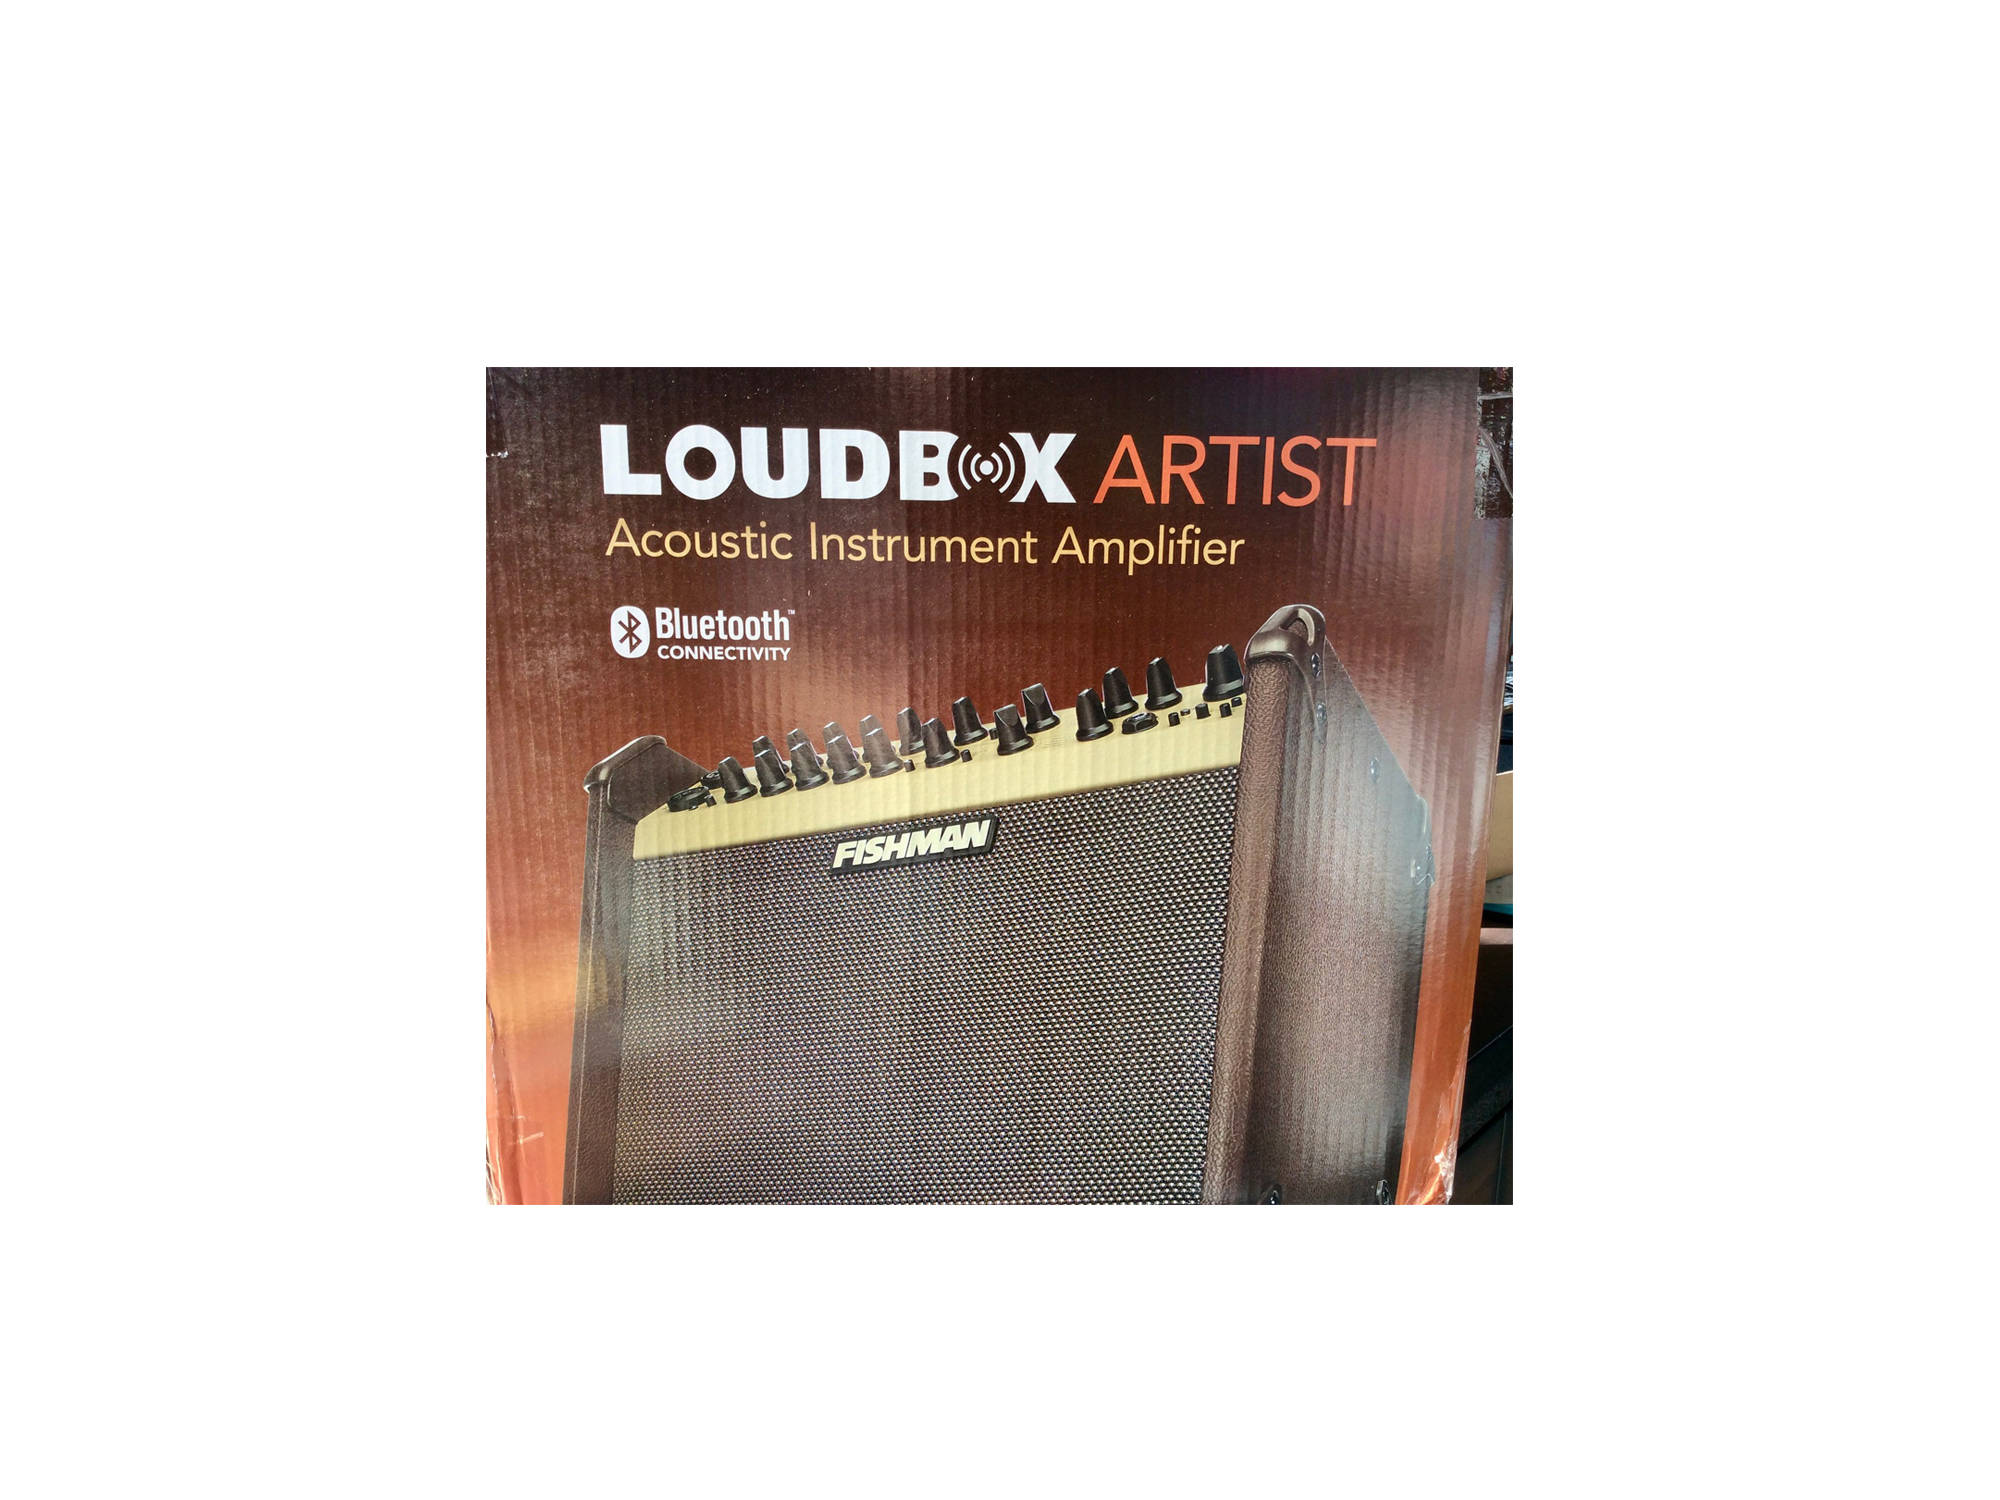 loudbox acoustic instrument amplifier